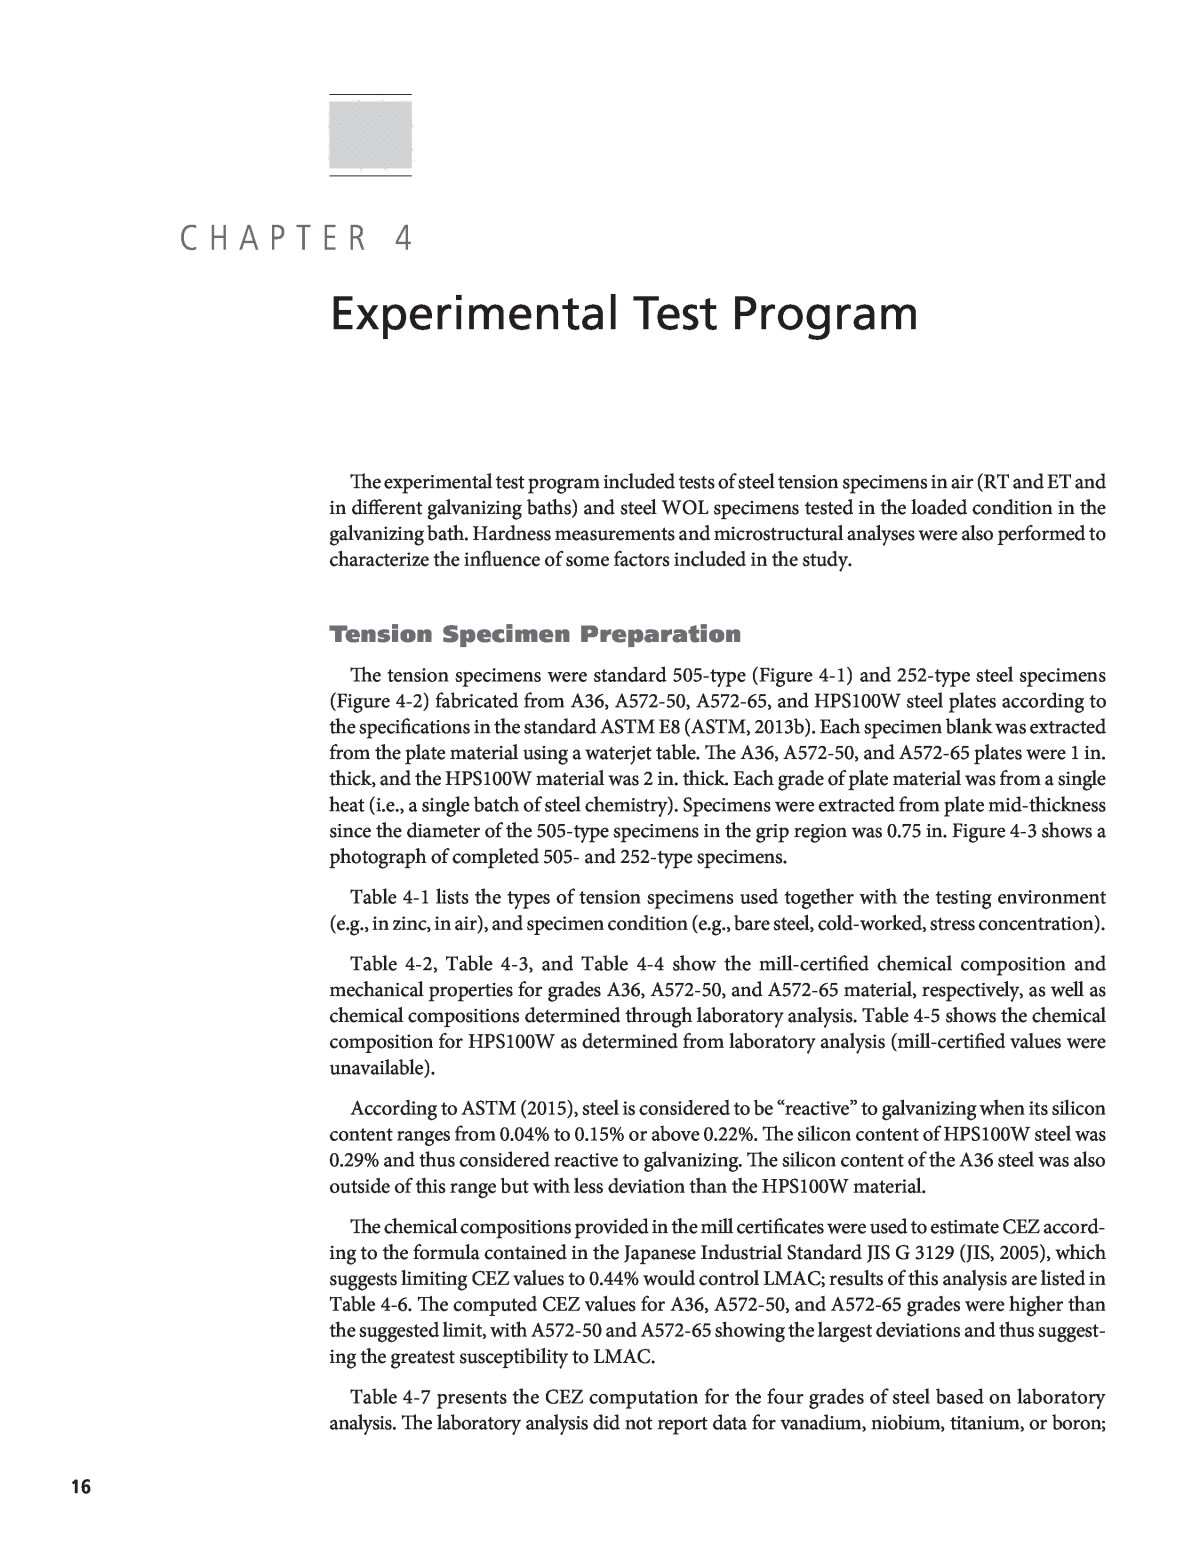 Chapter 4 - Experimental Test Program | Mitigation of Weldment